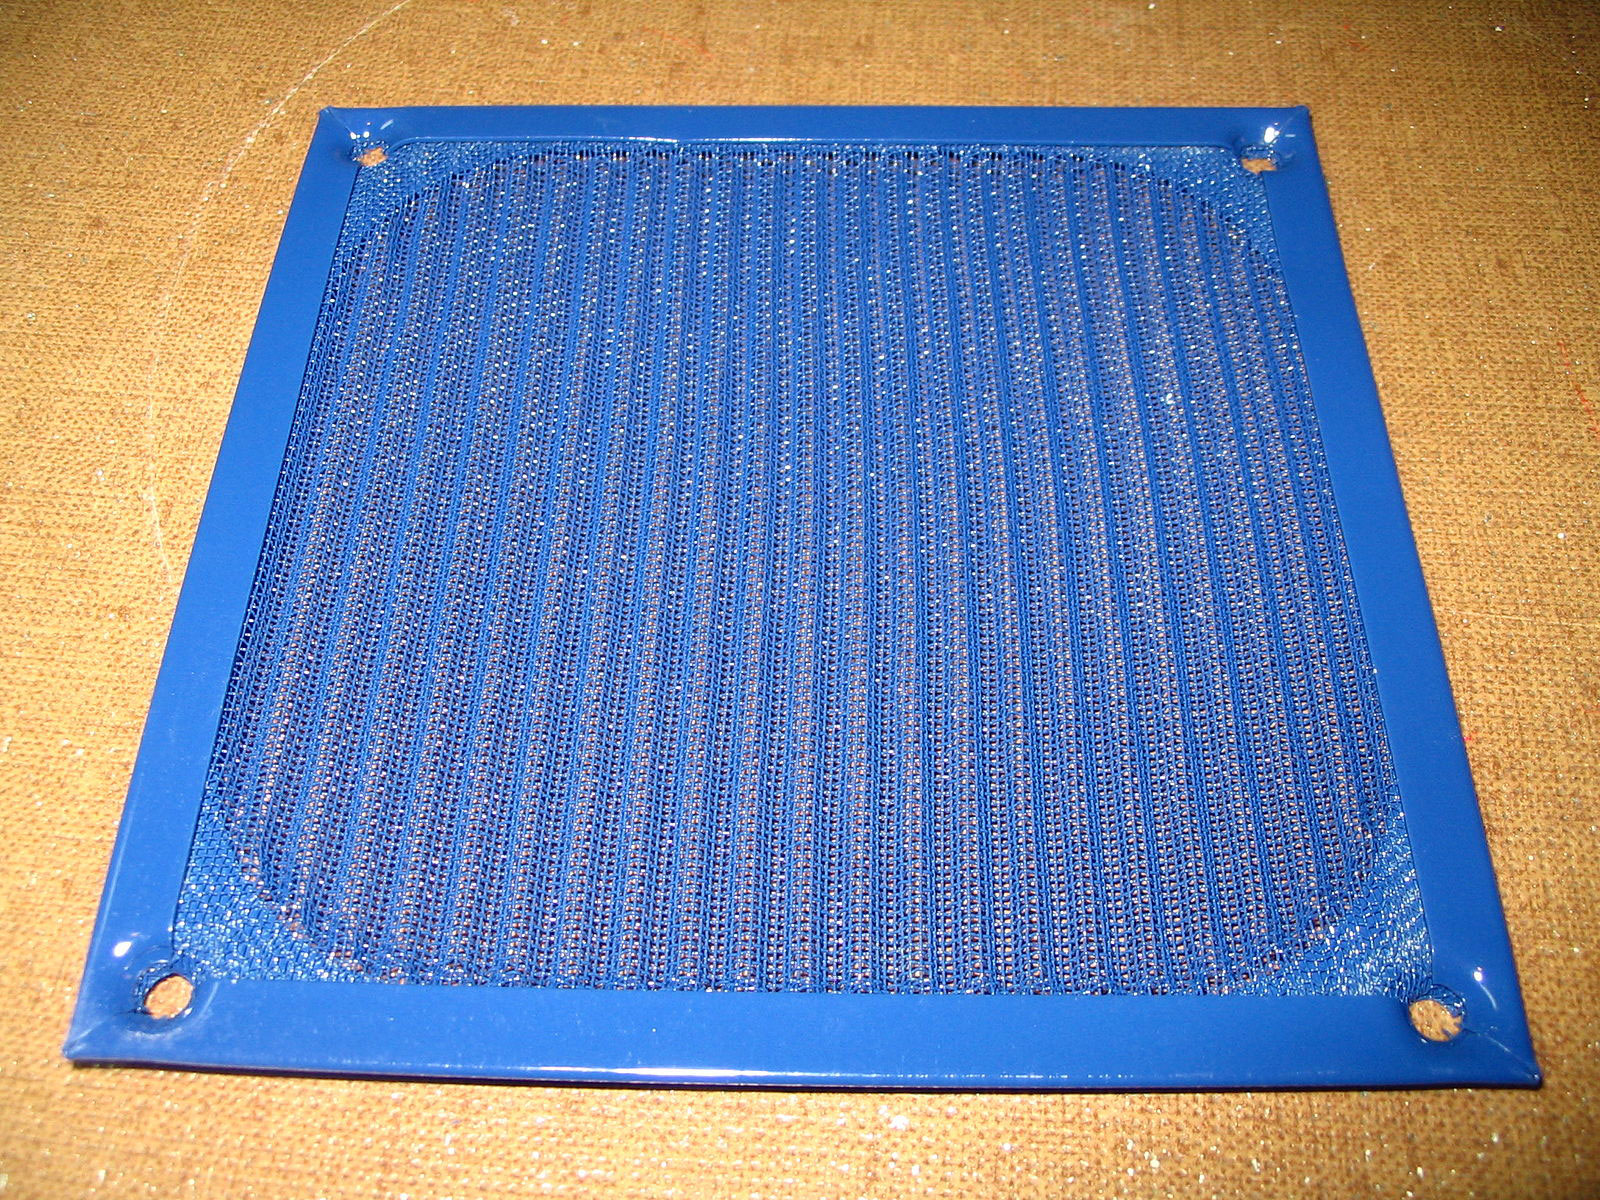 An aluminum fan filter